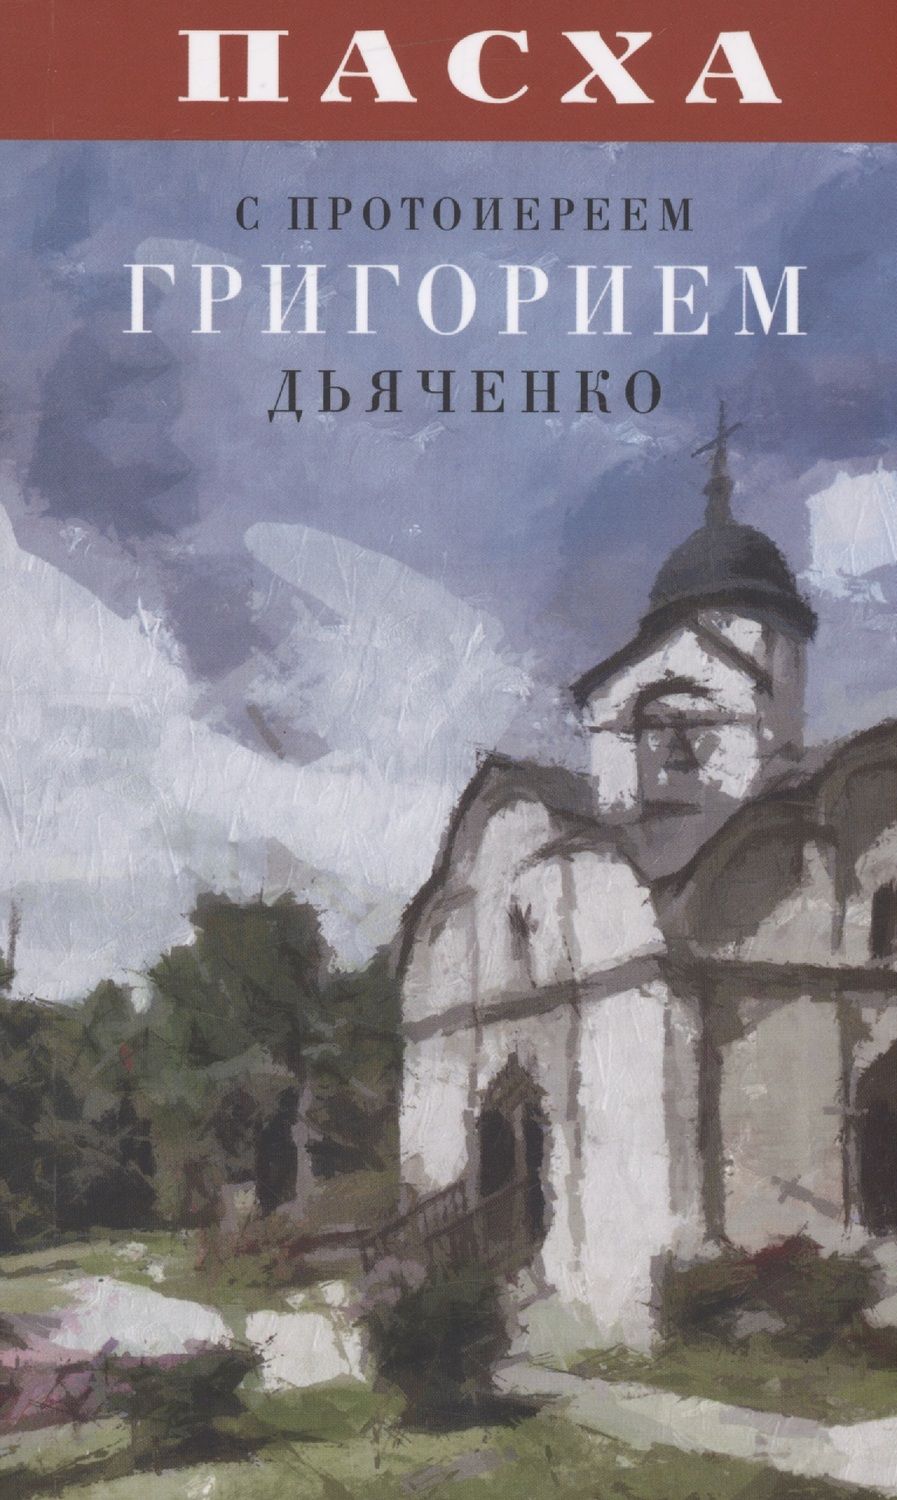 Обложка книги "Пасха с протоиереем Григорием Дьяченко"